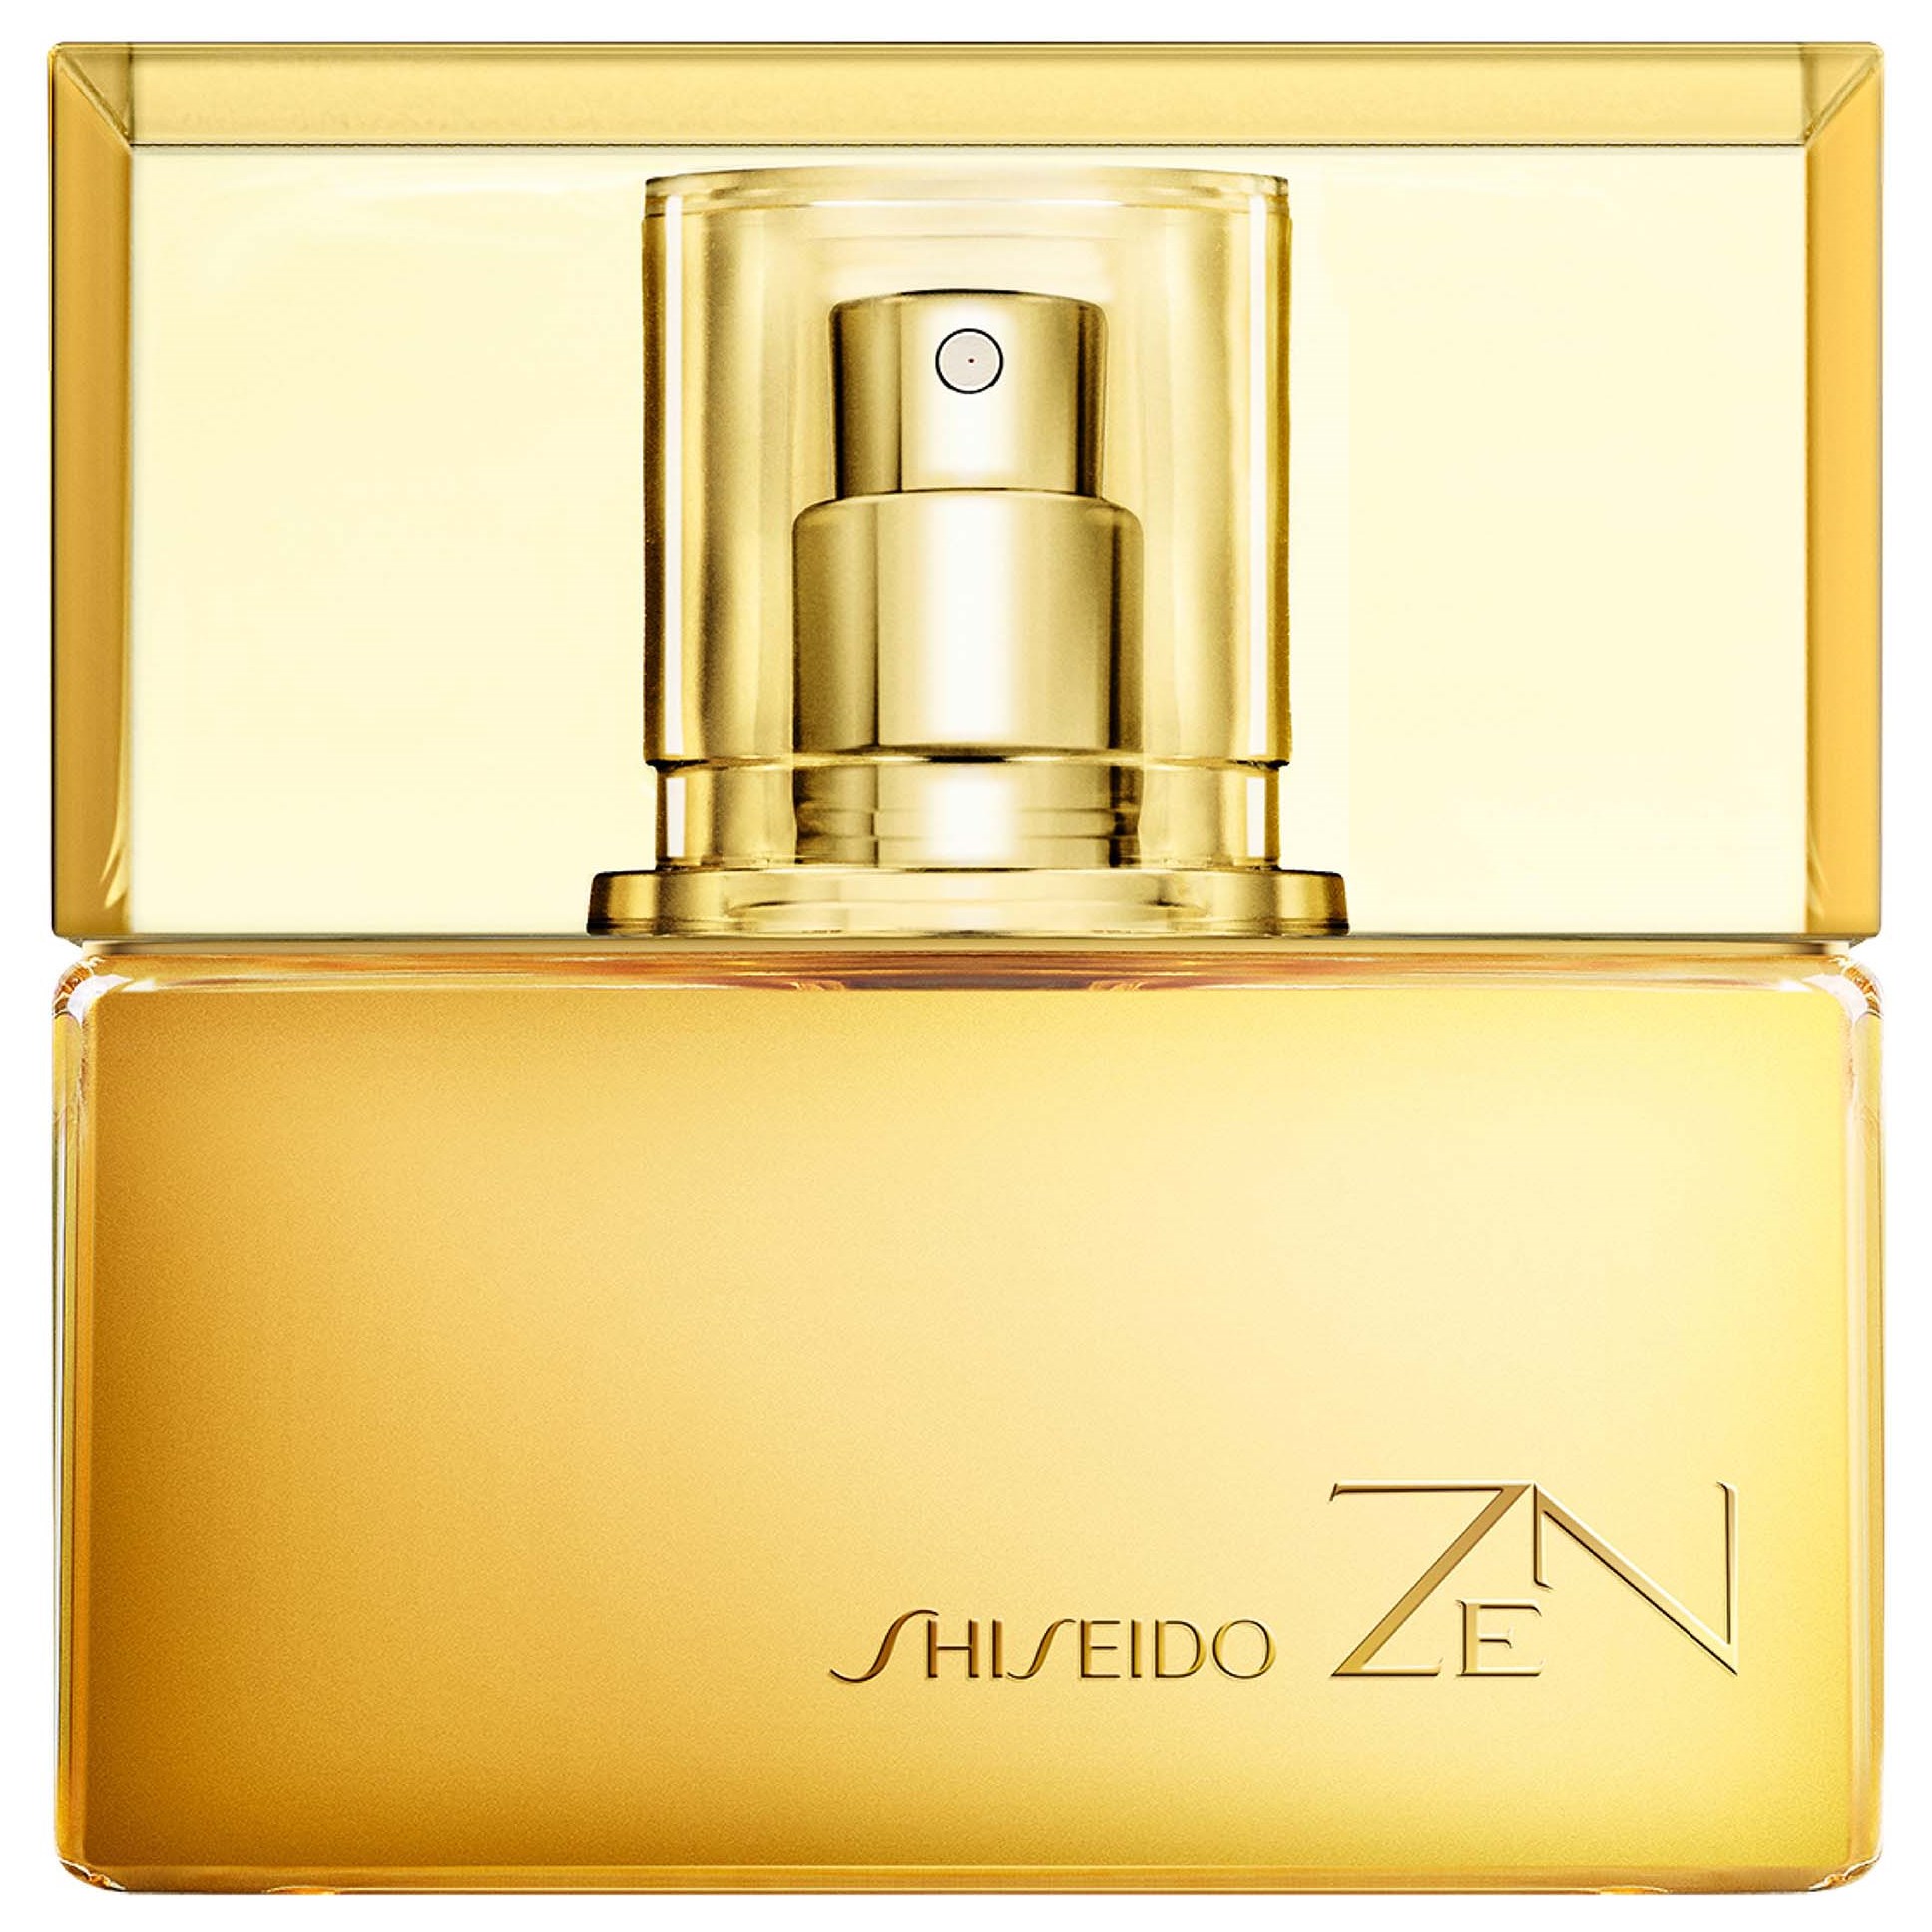 Shiseido Zen Eau De Parfum 30 ml